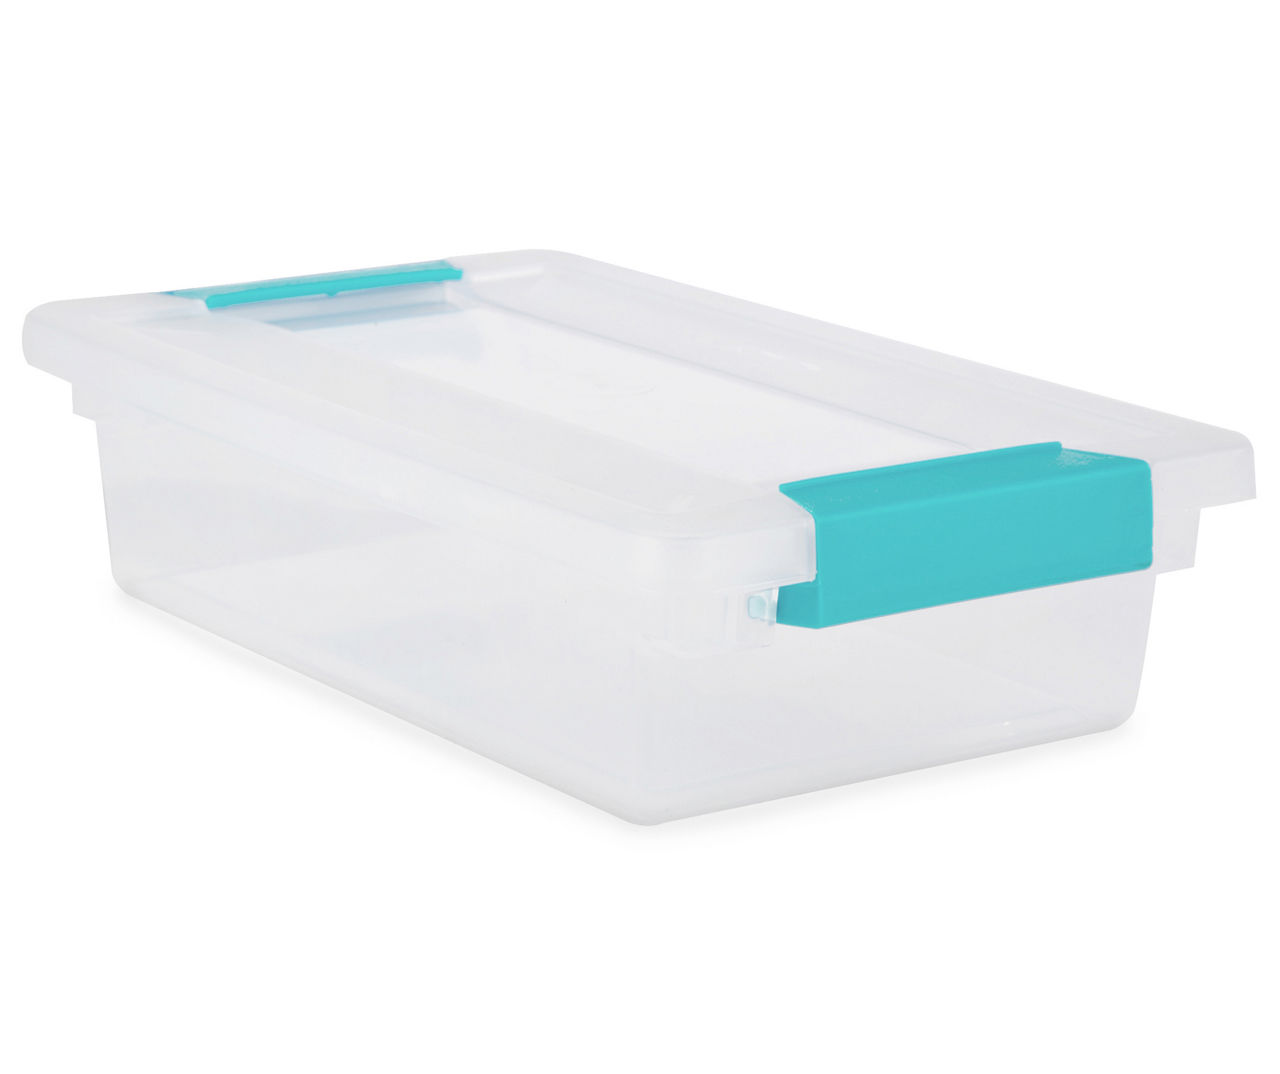 Sterilite Small Clear Storage Box with Aqua Latch